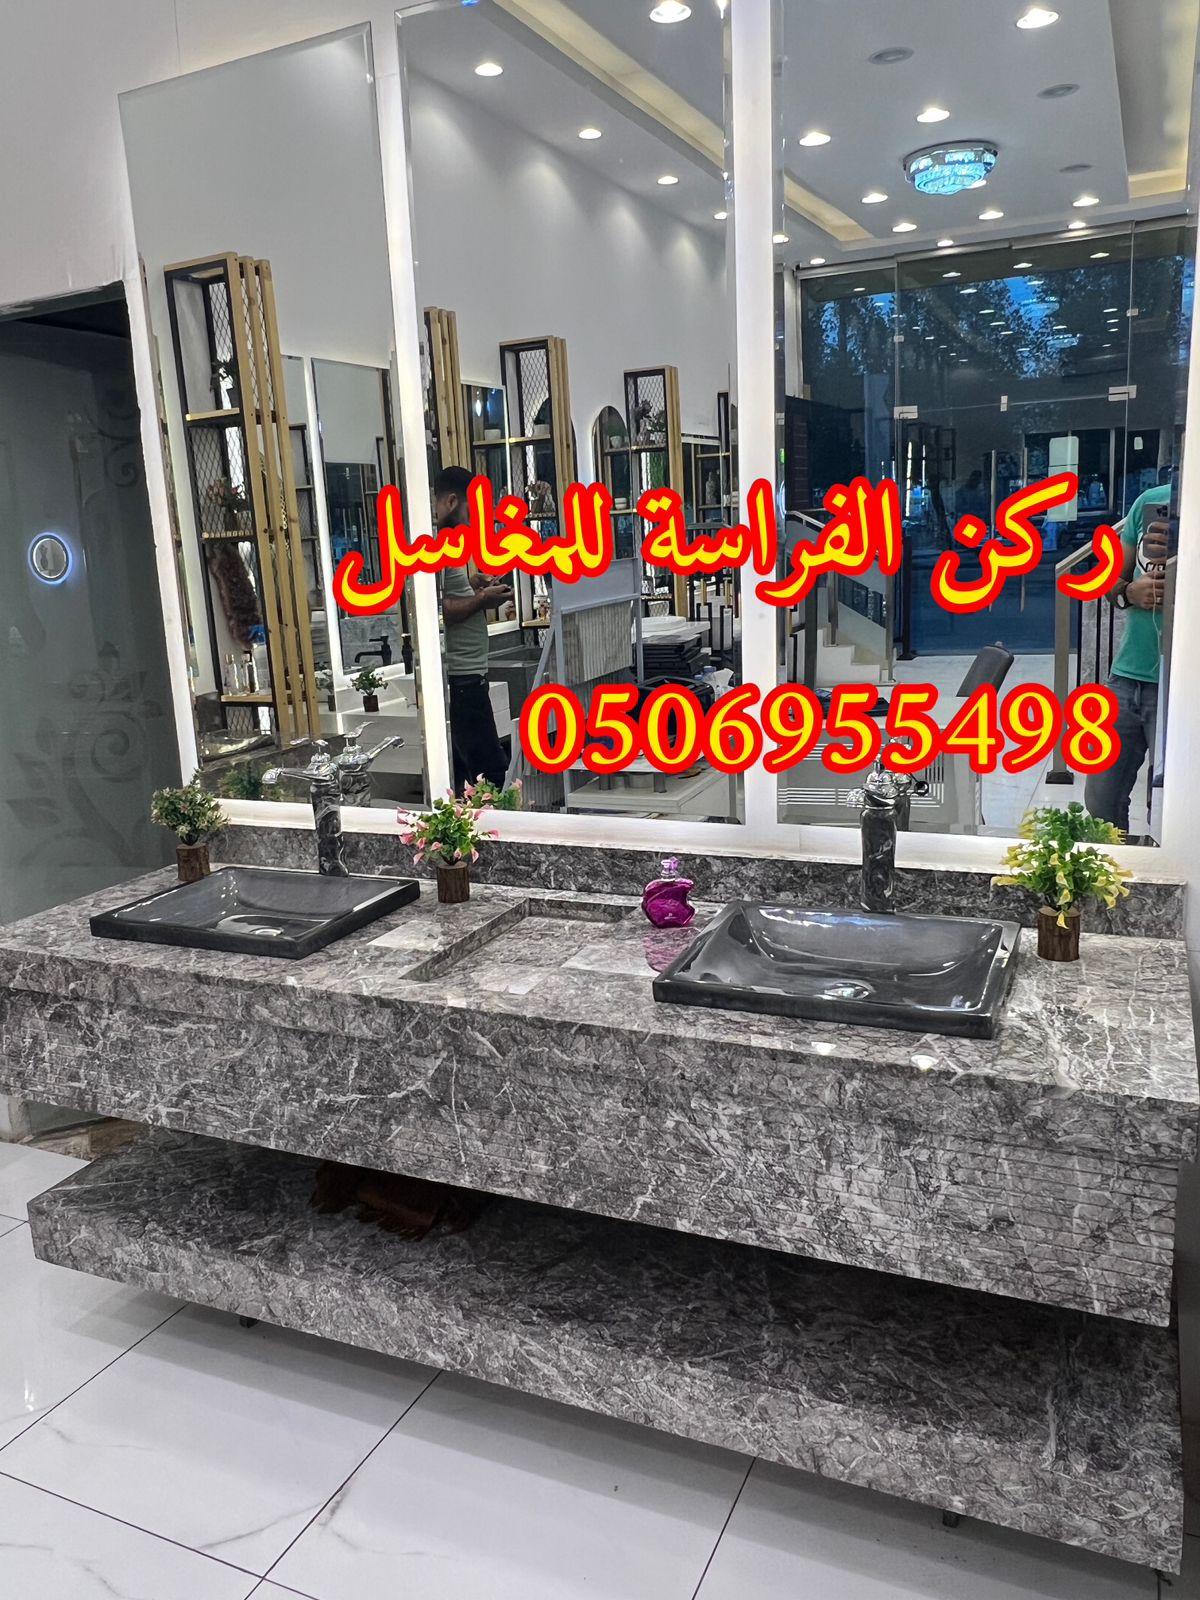 احواض مغاسل رخام في الرياض,0506955498 271194414